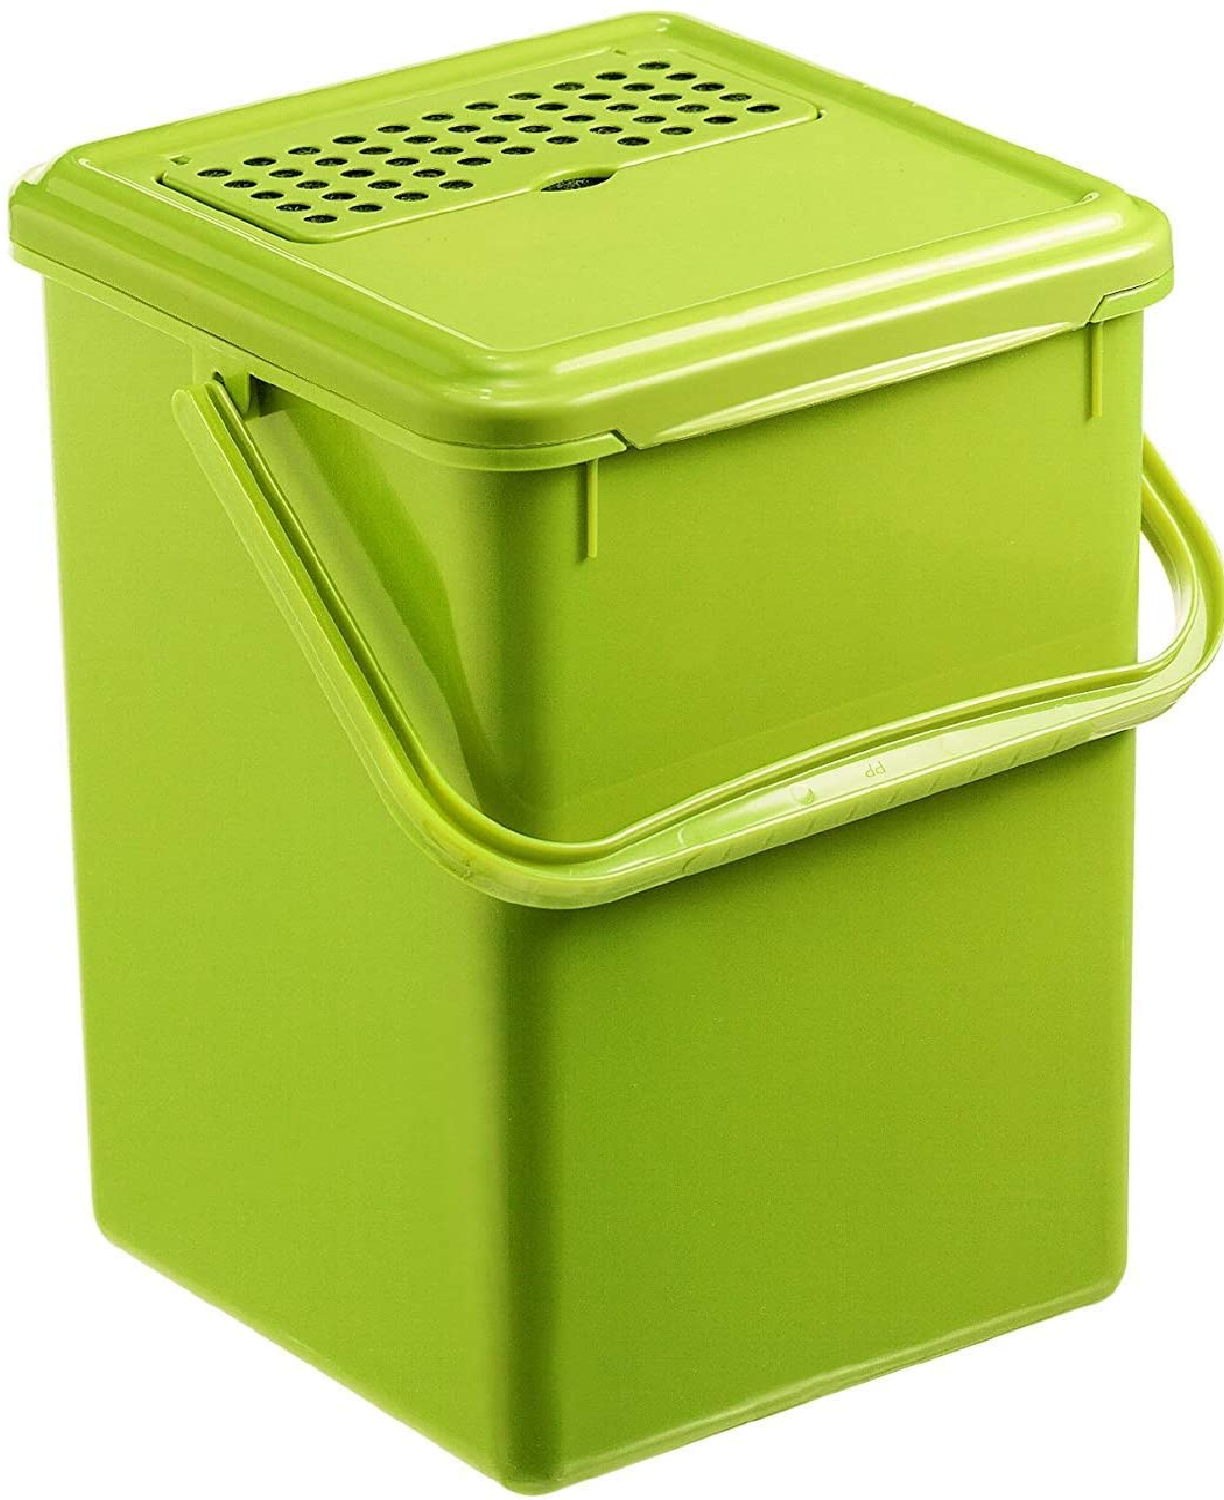 Komposteimer 9l mit Aktivkohlefilter im Deckel, Kunststoff (PP) BPA-frei, grün, 9l (23,0 x 22,5 x 27,5 cm)